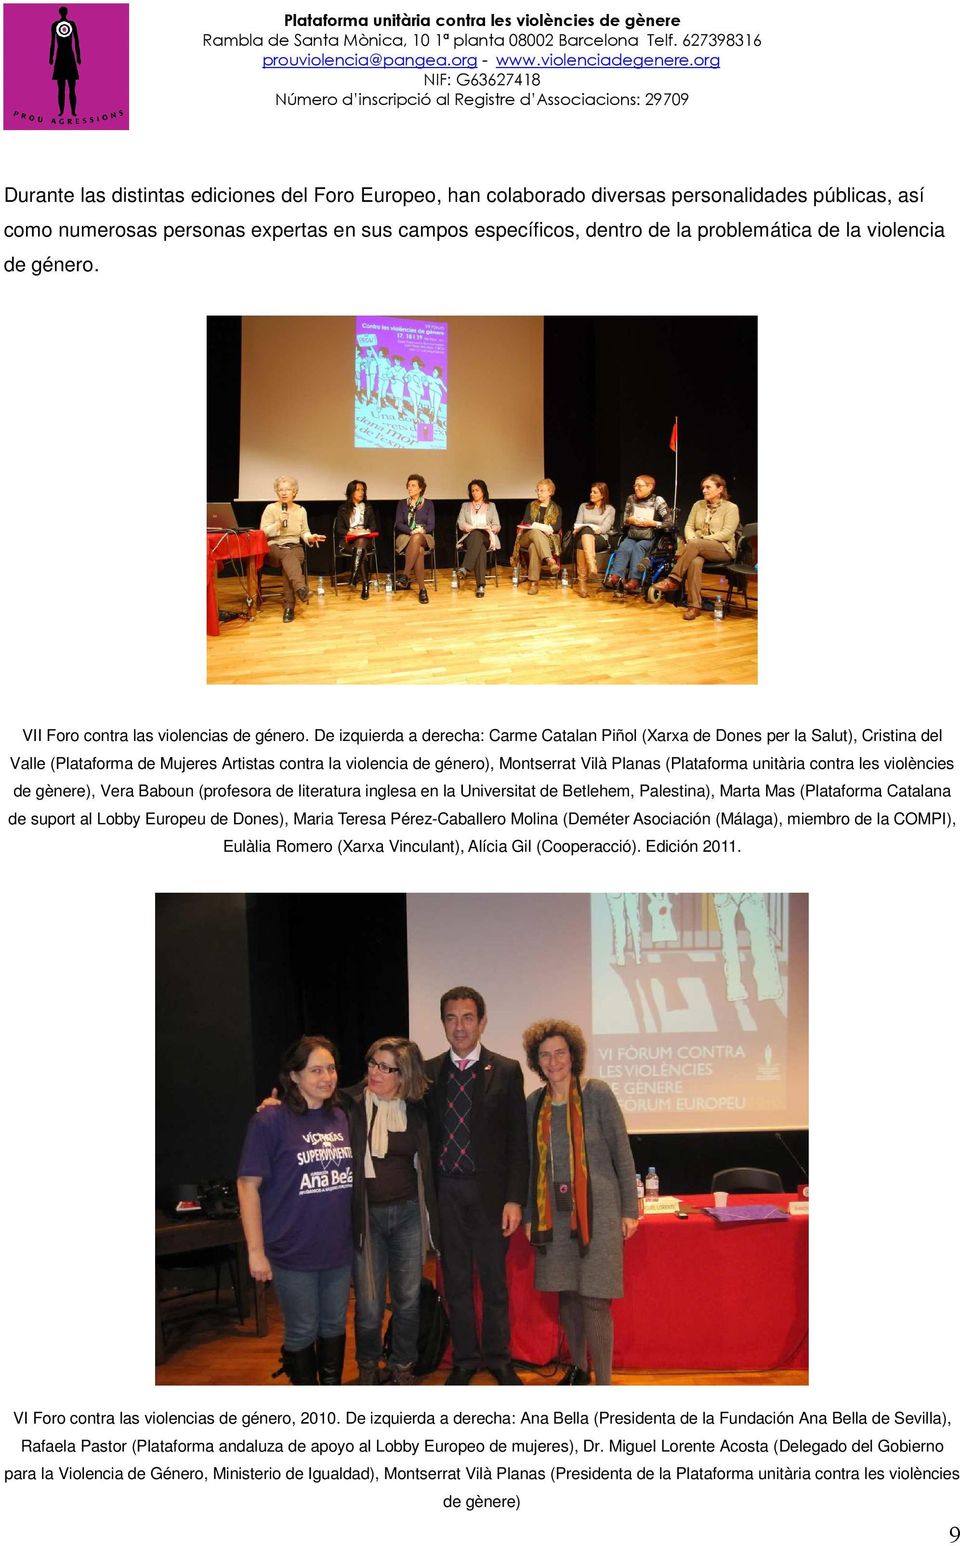 De izquierda a derecha: Carme Catalan Piñol (Xarxa de Dones per la Salut), Cristina del Valle (Plataforma de Mujeres Artistas contra la violencia de género), Montserrat Vilà Planas (Plataforma